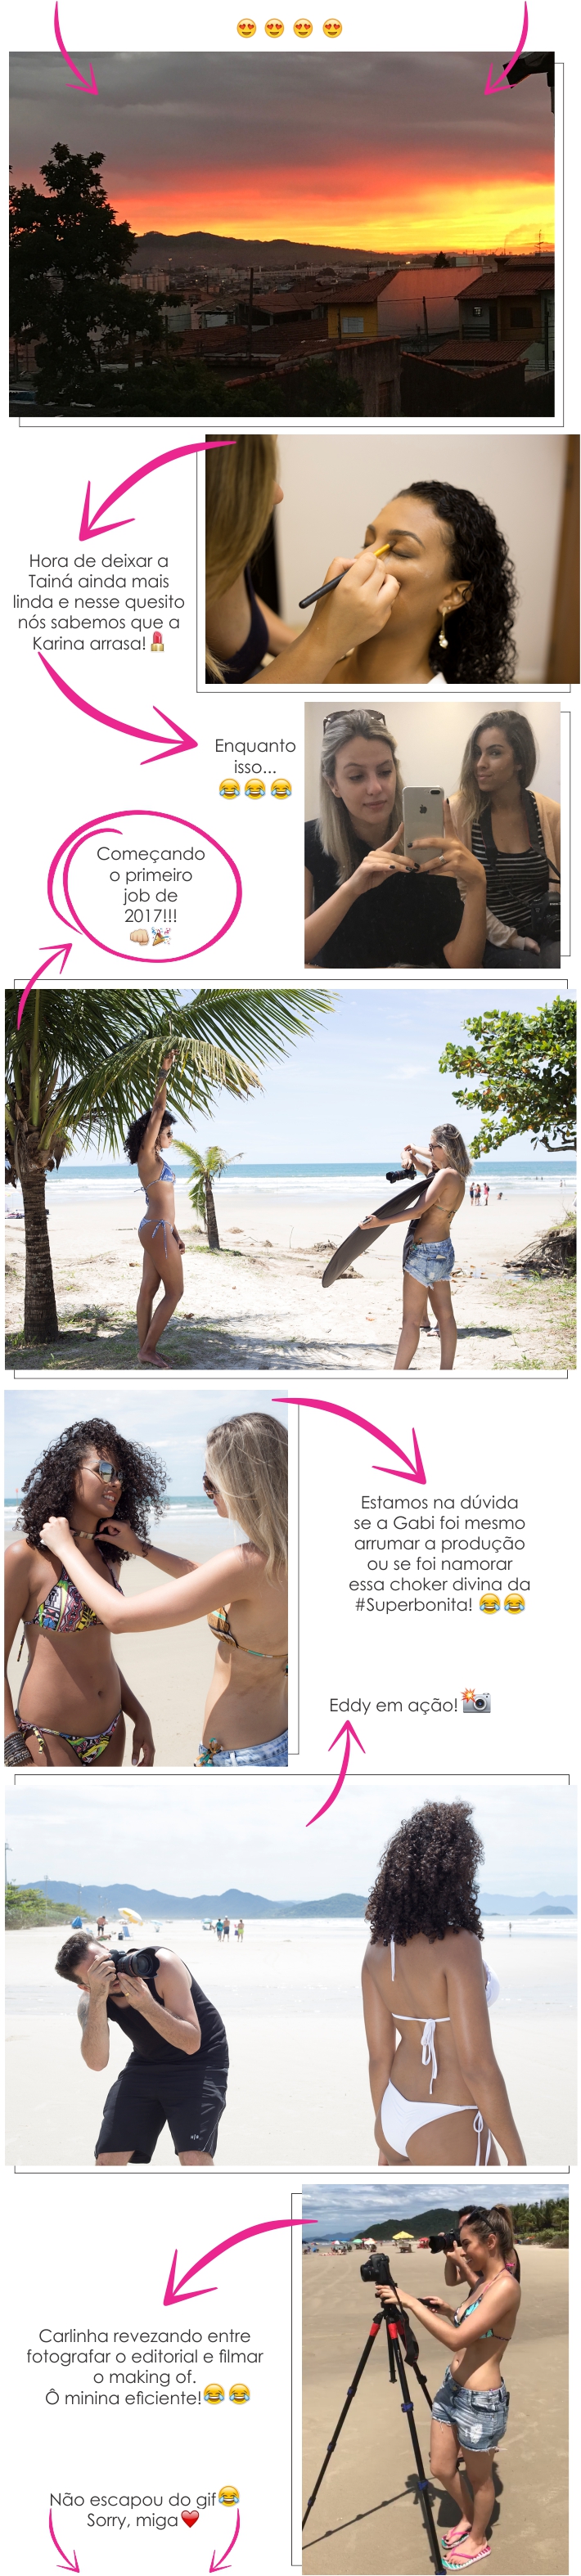 Making of: editorial "Verão pede praia!"